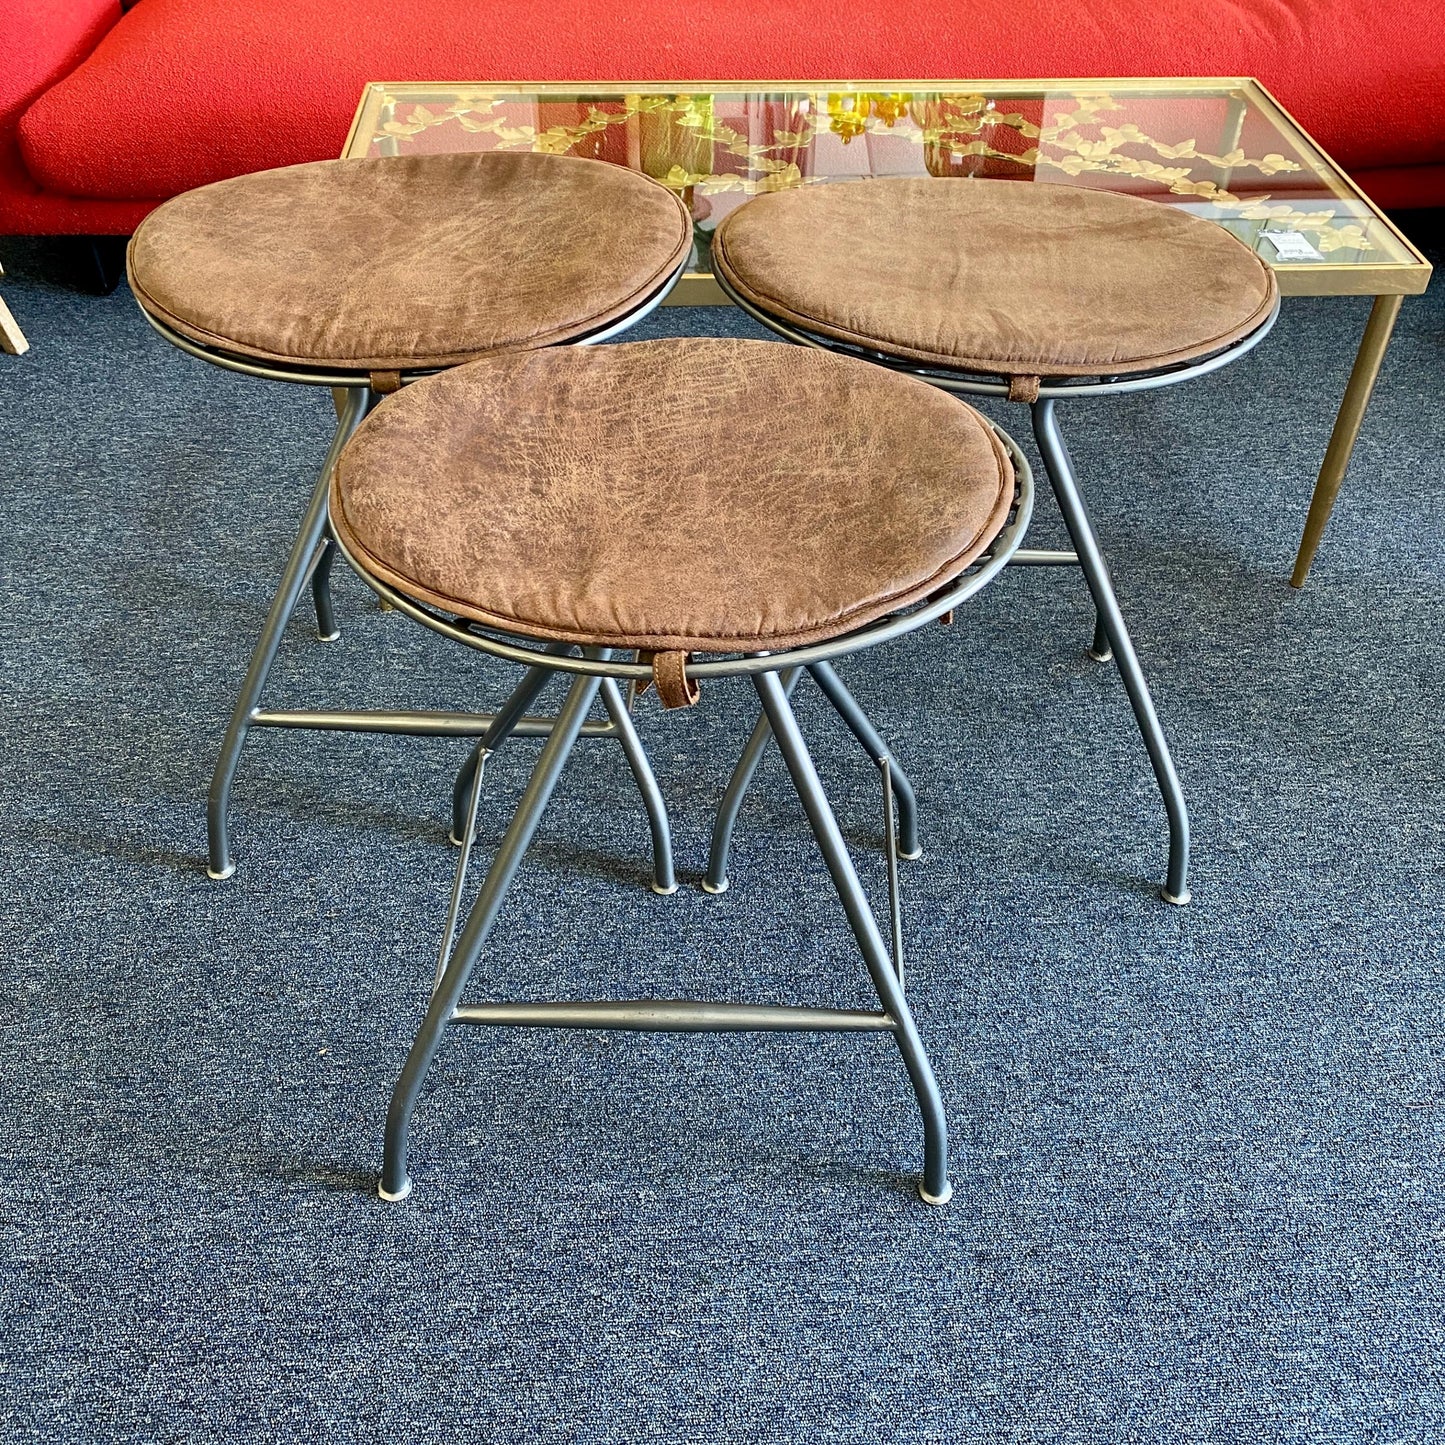 Set of 3 Metal Barstools